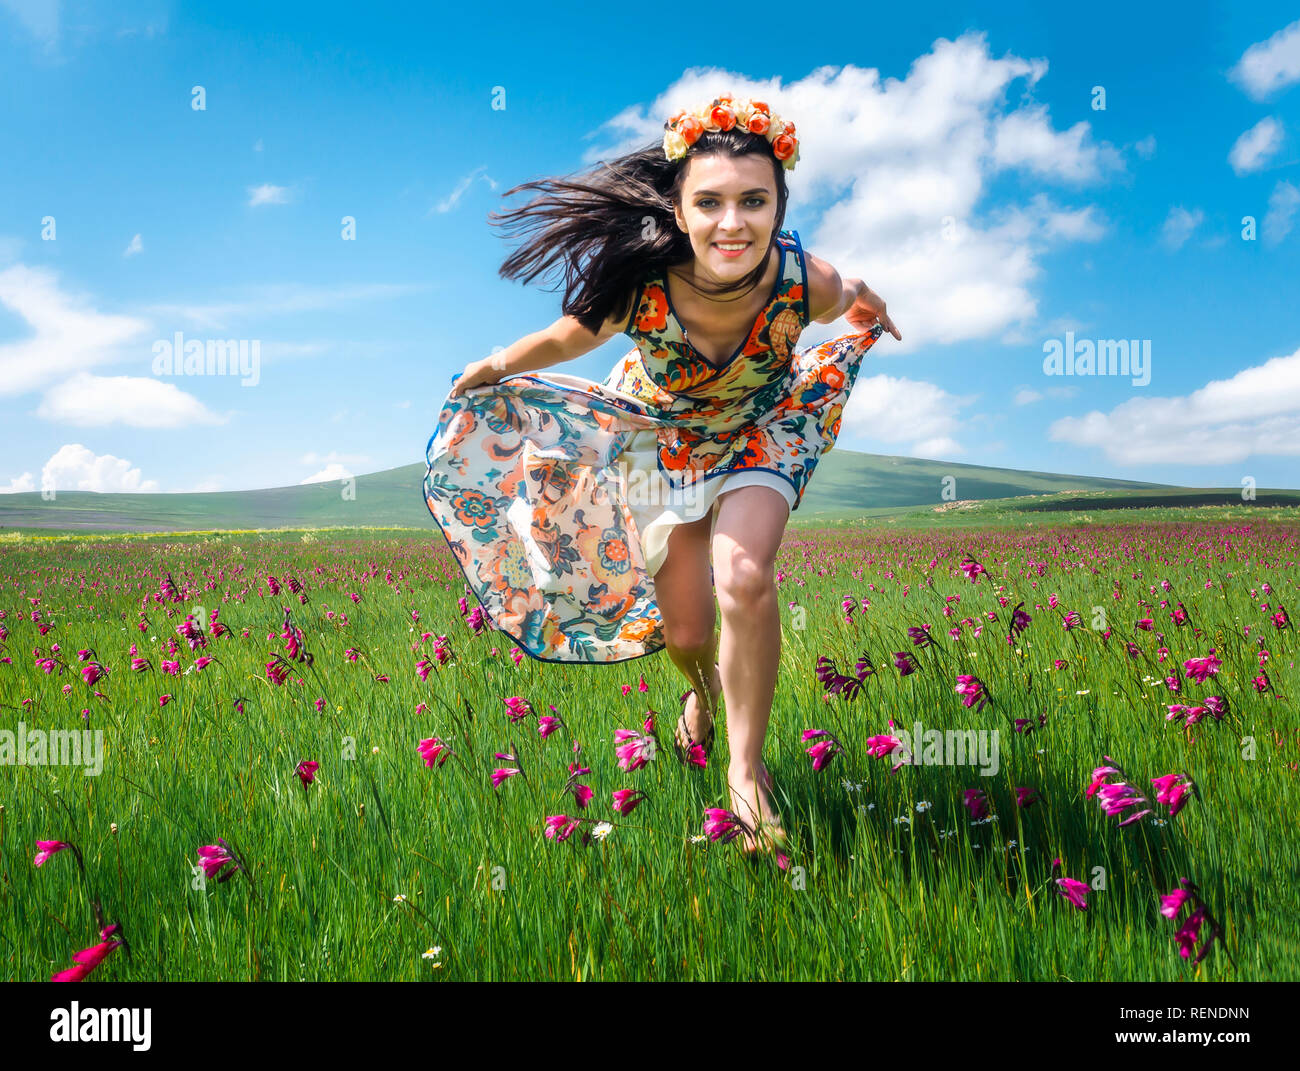 Beautiful smiling girl fonctionnant en meadom floraison en robe colorée. Jolie femme brune en guirlande le long champ. Je suis libre concept Banque D'Images